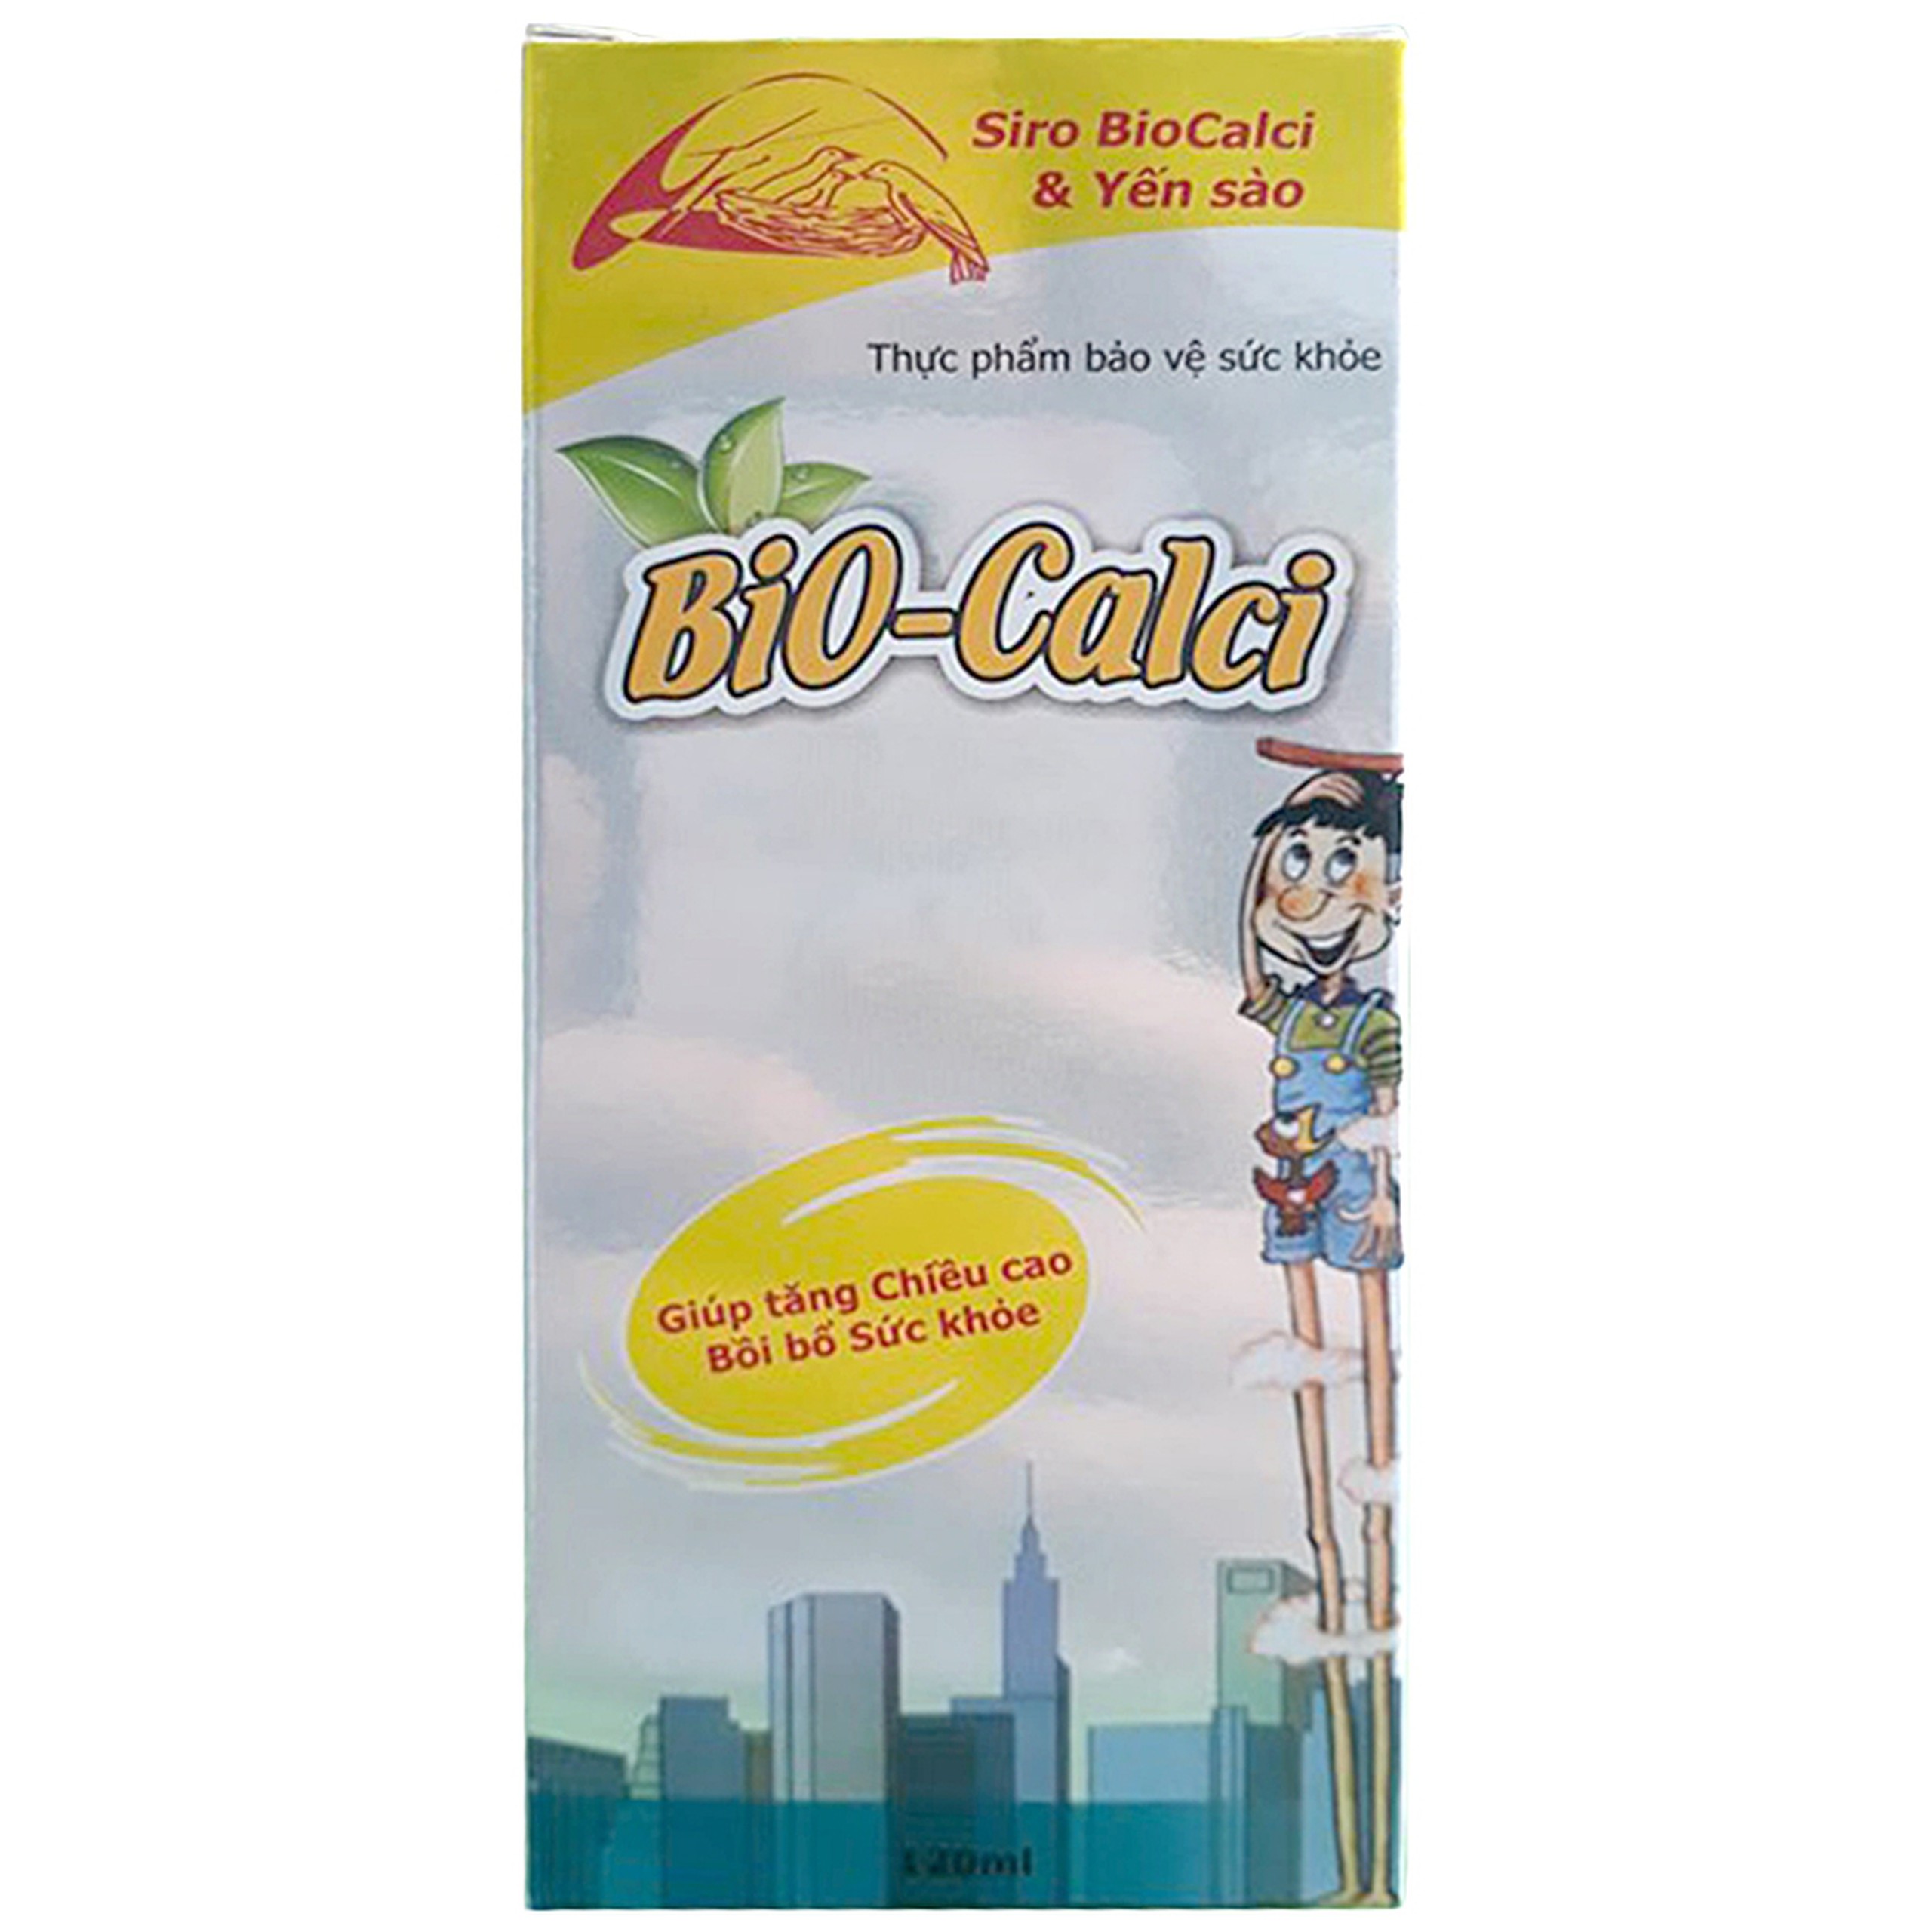 Siro Bio-Calci Good Health bổ sung Calci hữu cơ, acid amin, Vitamin và khoáng chất (120ml)